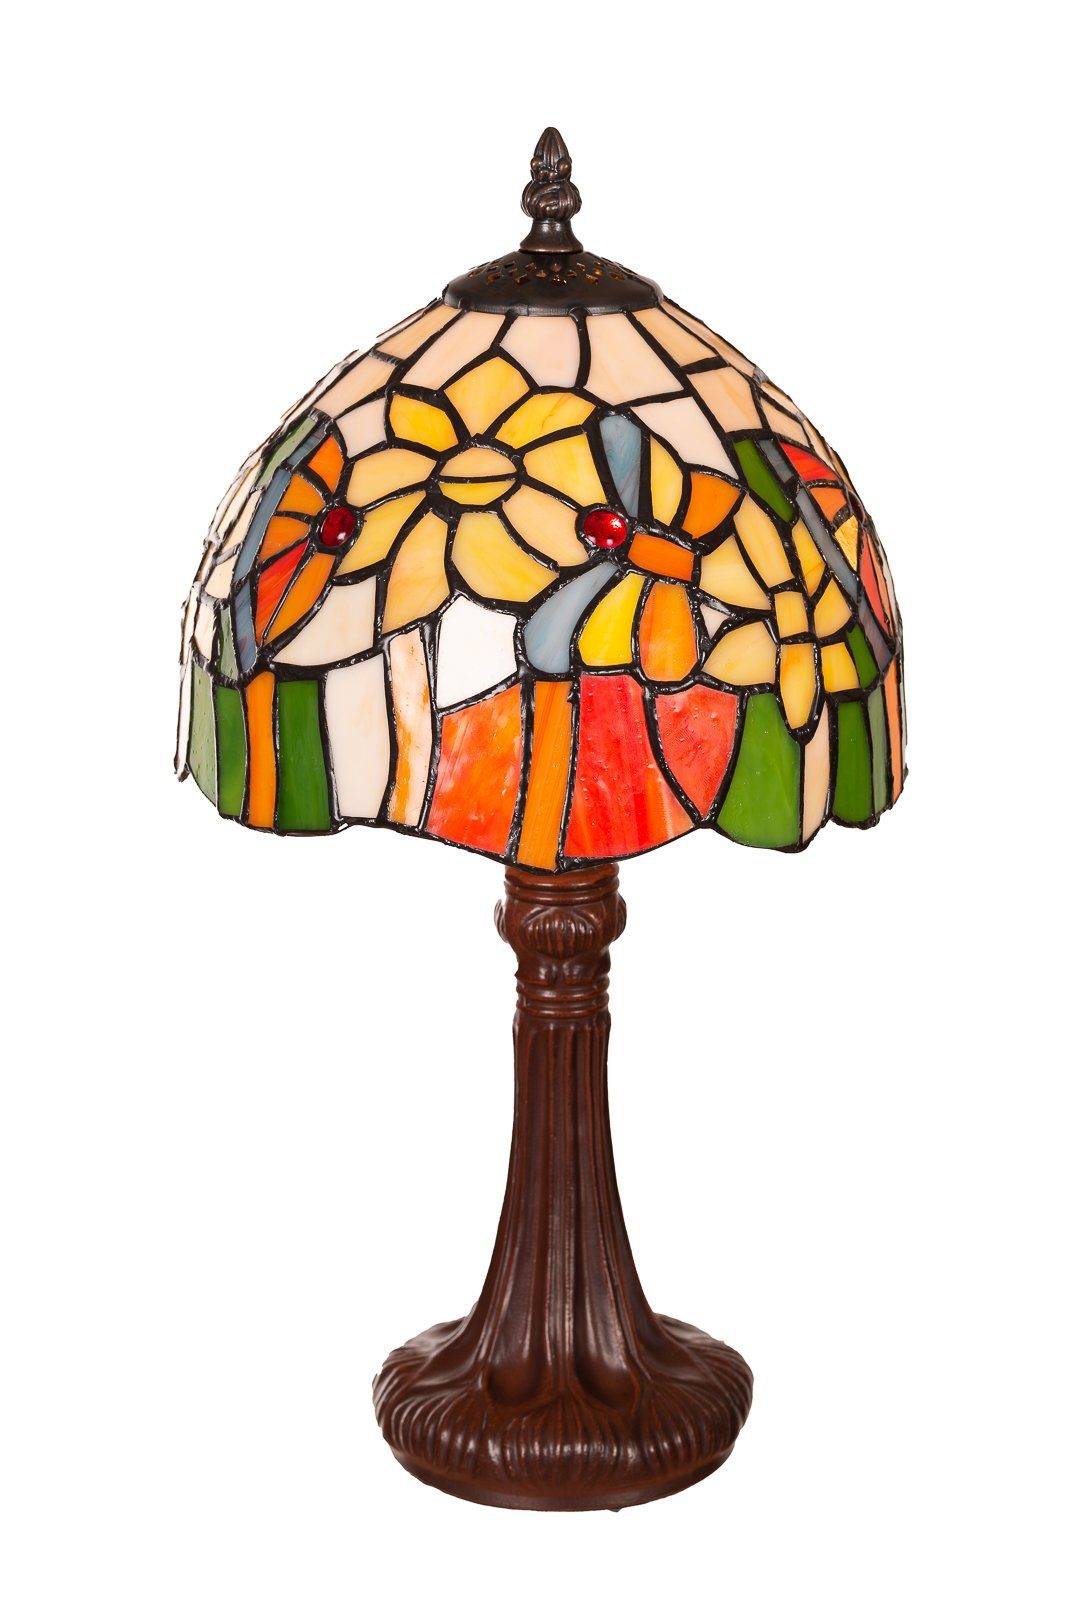 BIRENDY Stehlampe »Birendy Tischlampe Tiffany Blume bunt Tiff154 Motiv Lampe  Dekorationslampe« online kaufen | OTTO